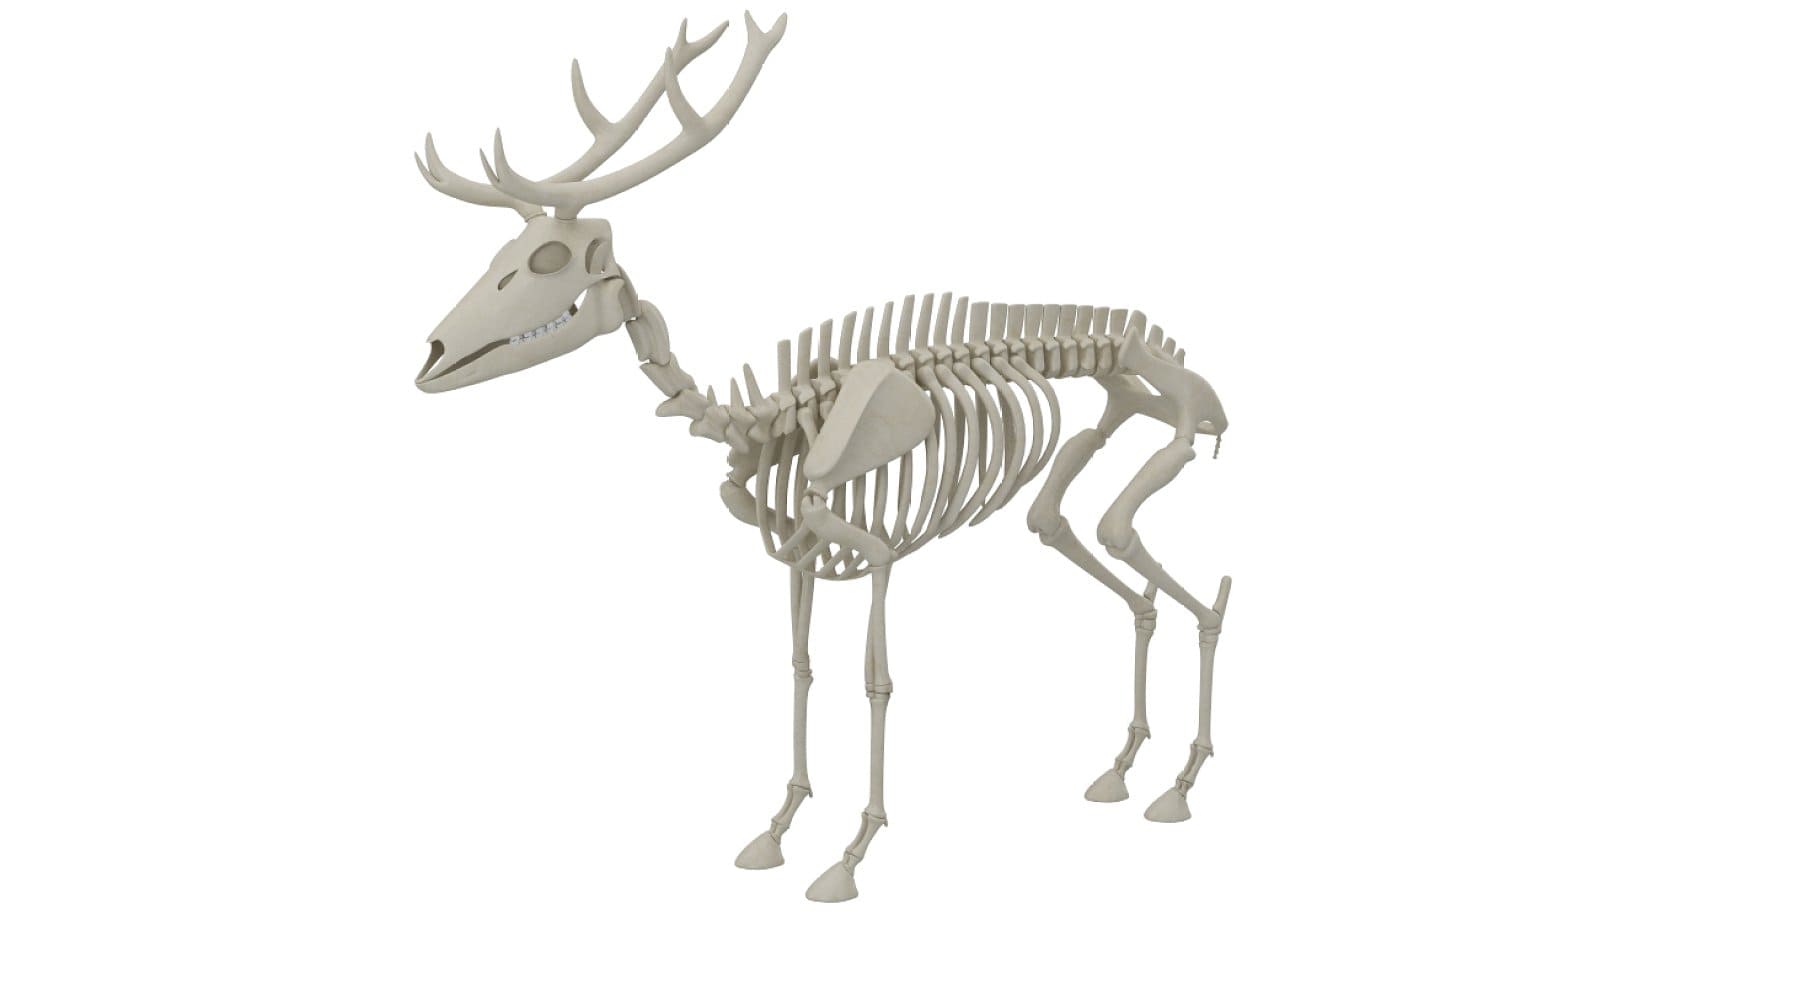 Side view of a deer skeleton.